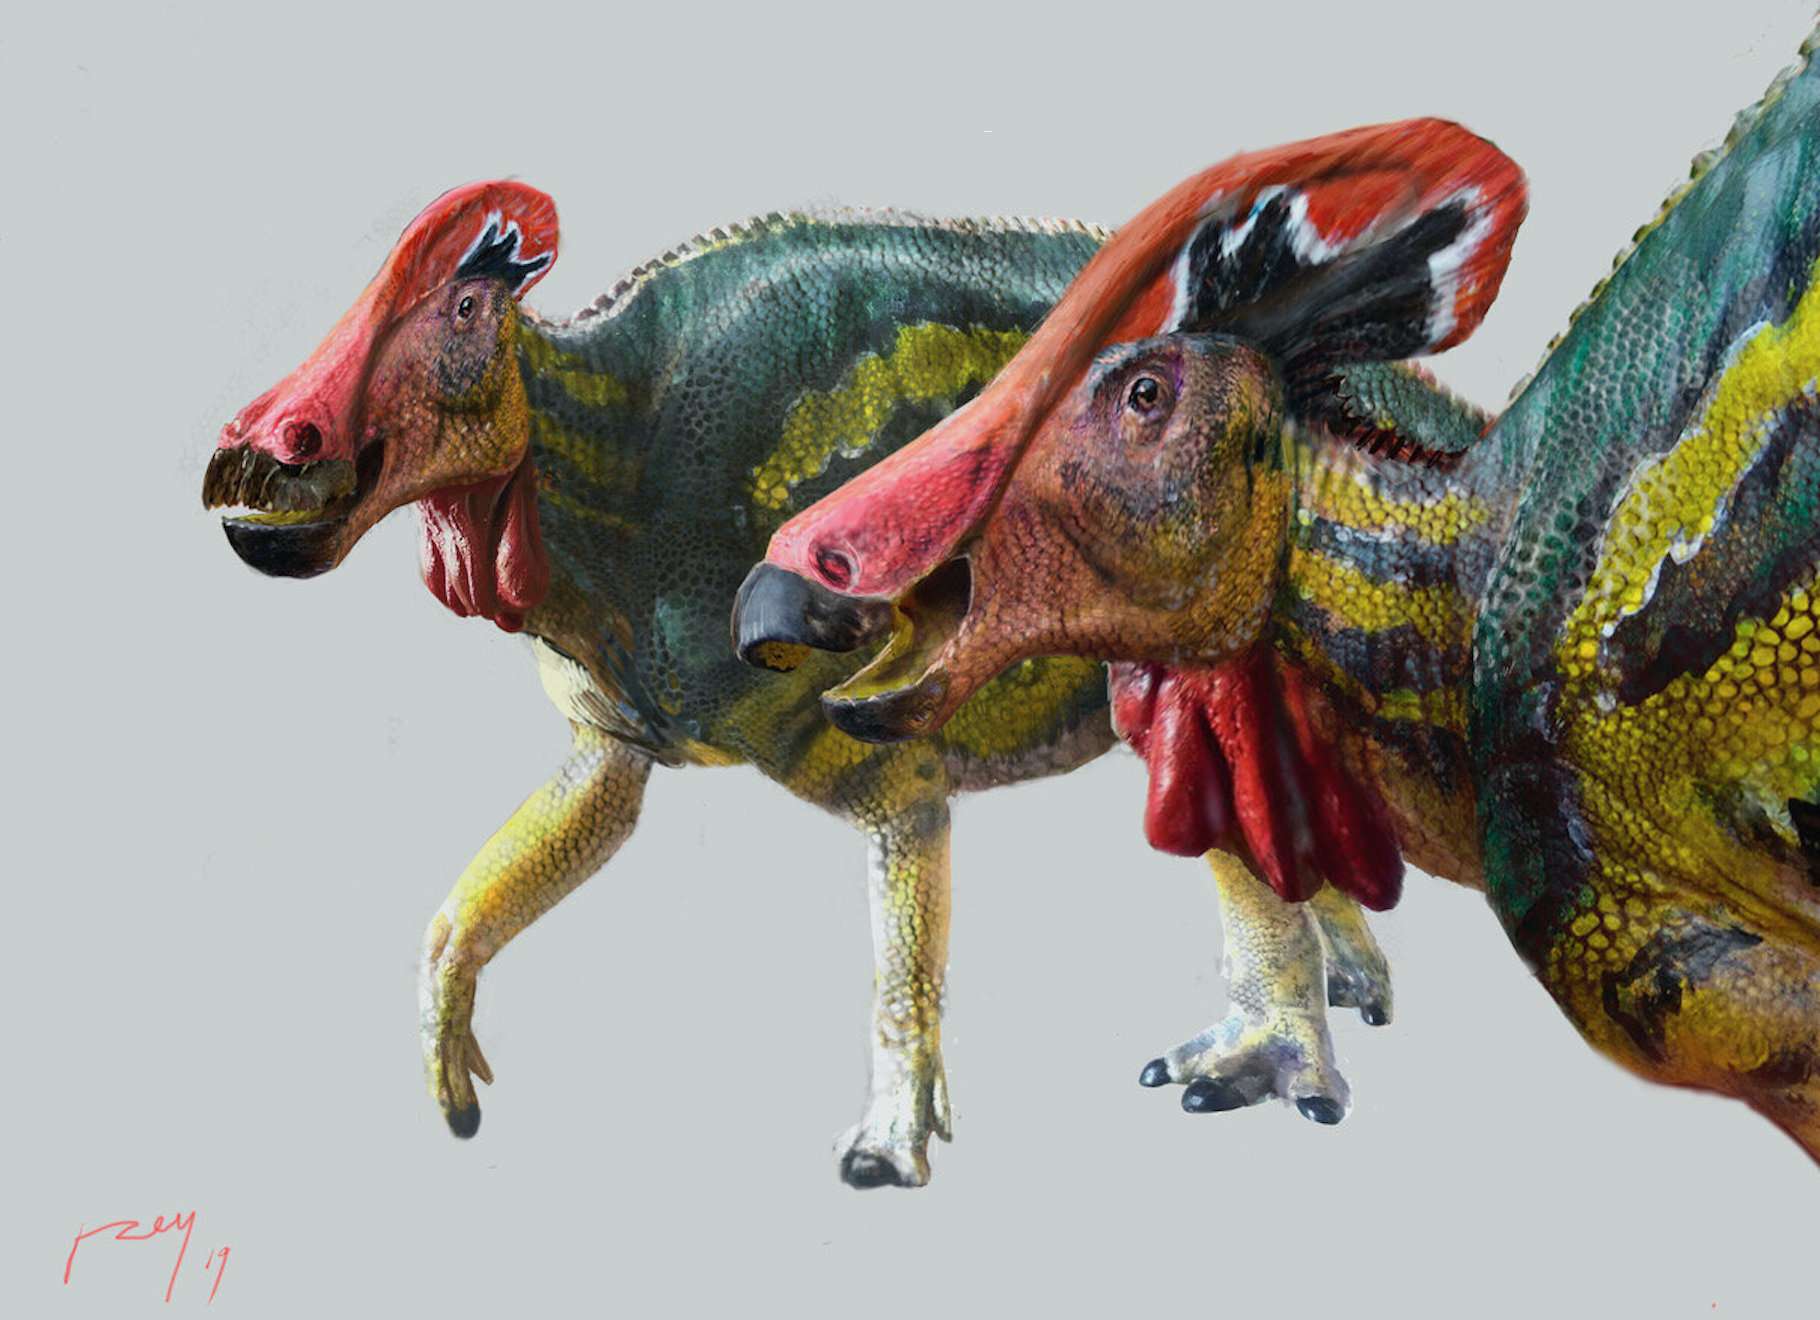 DINOSAURES : Histoire évolutive des dinosaures - Encyclopædia Universalis